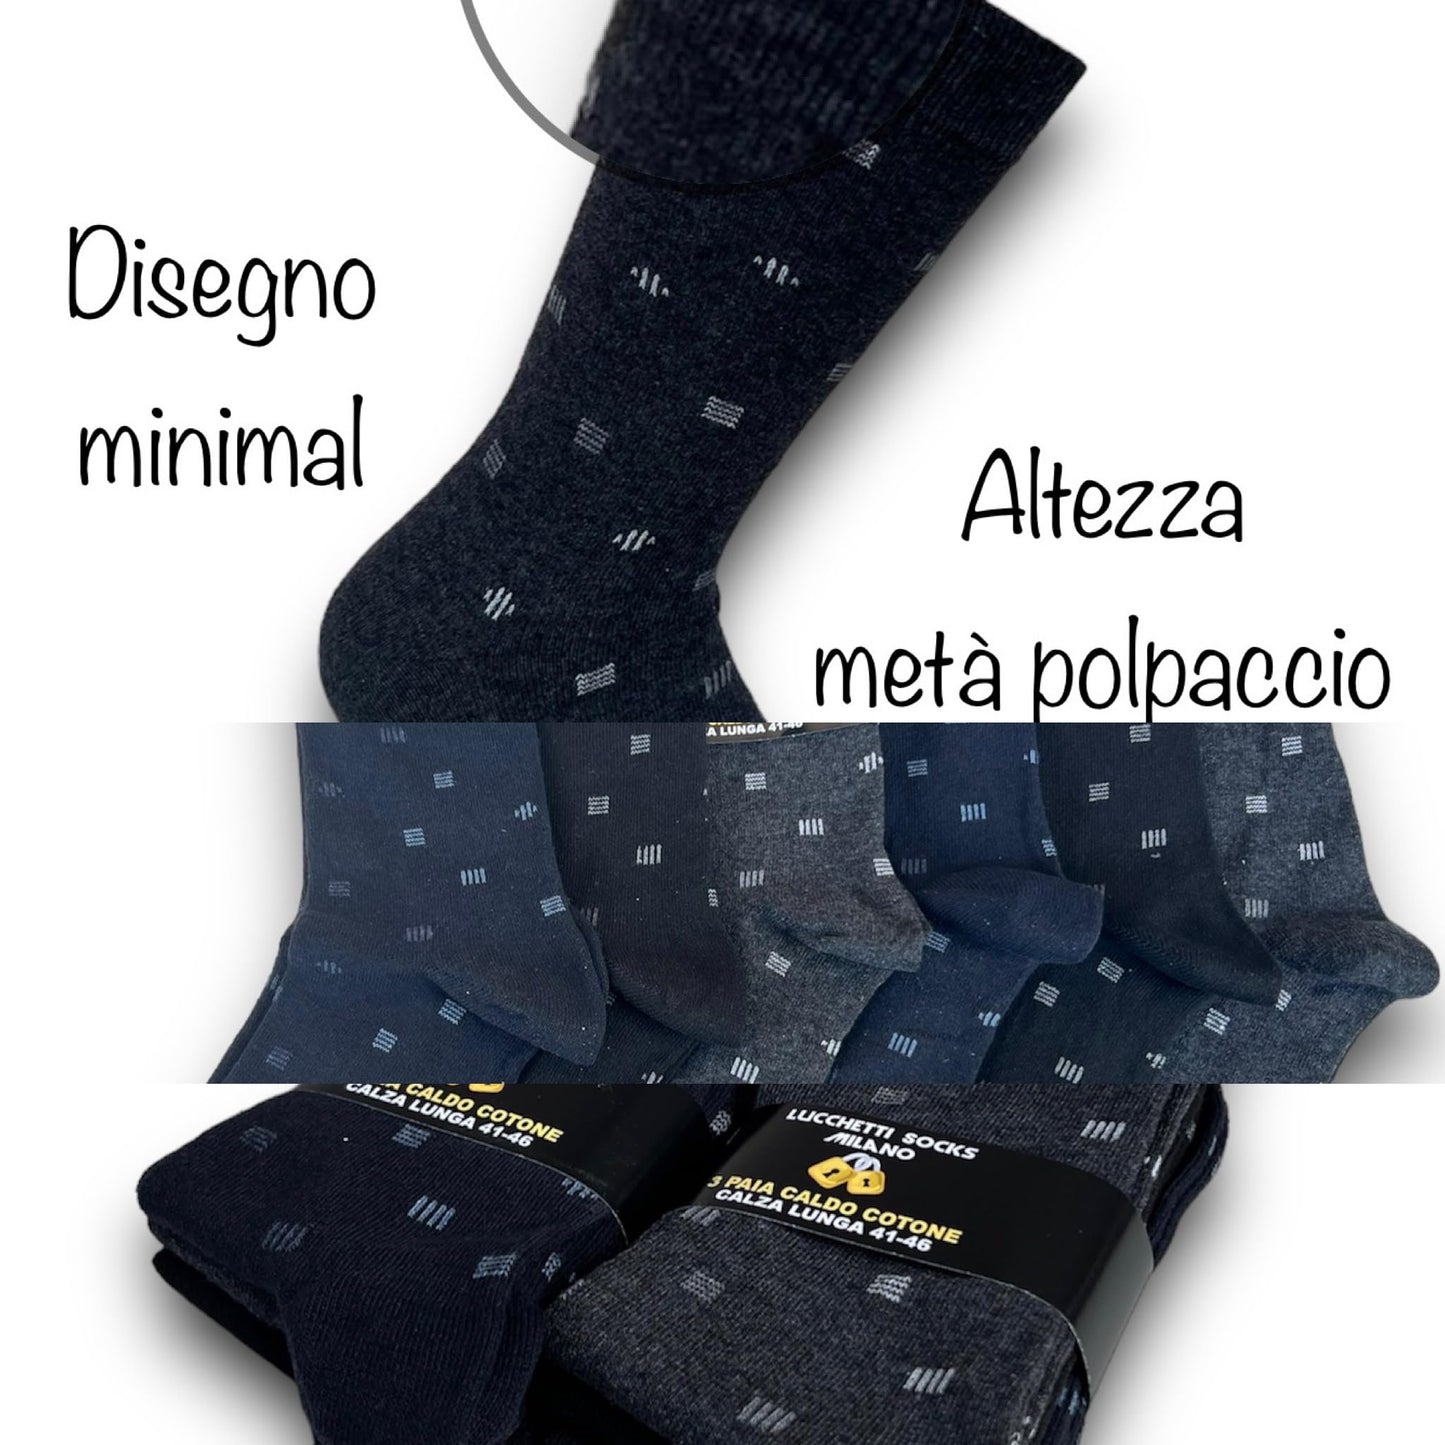 Lucchetti Socks Milano 6 Paia di Calze Uomo Corte Caldo Cotone Colorate Tendenza Pois Fantasia Fashion Made in Italy